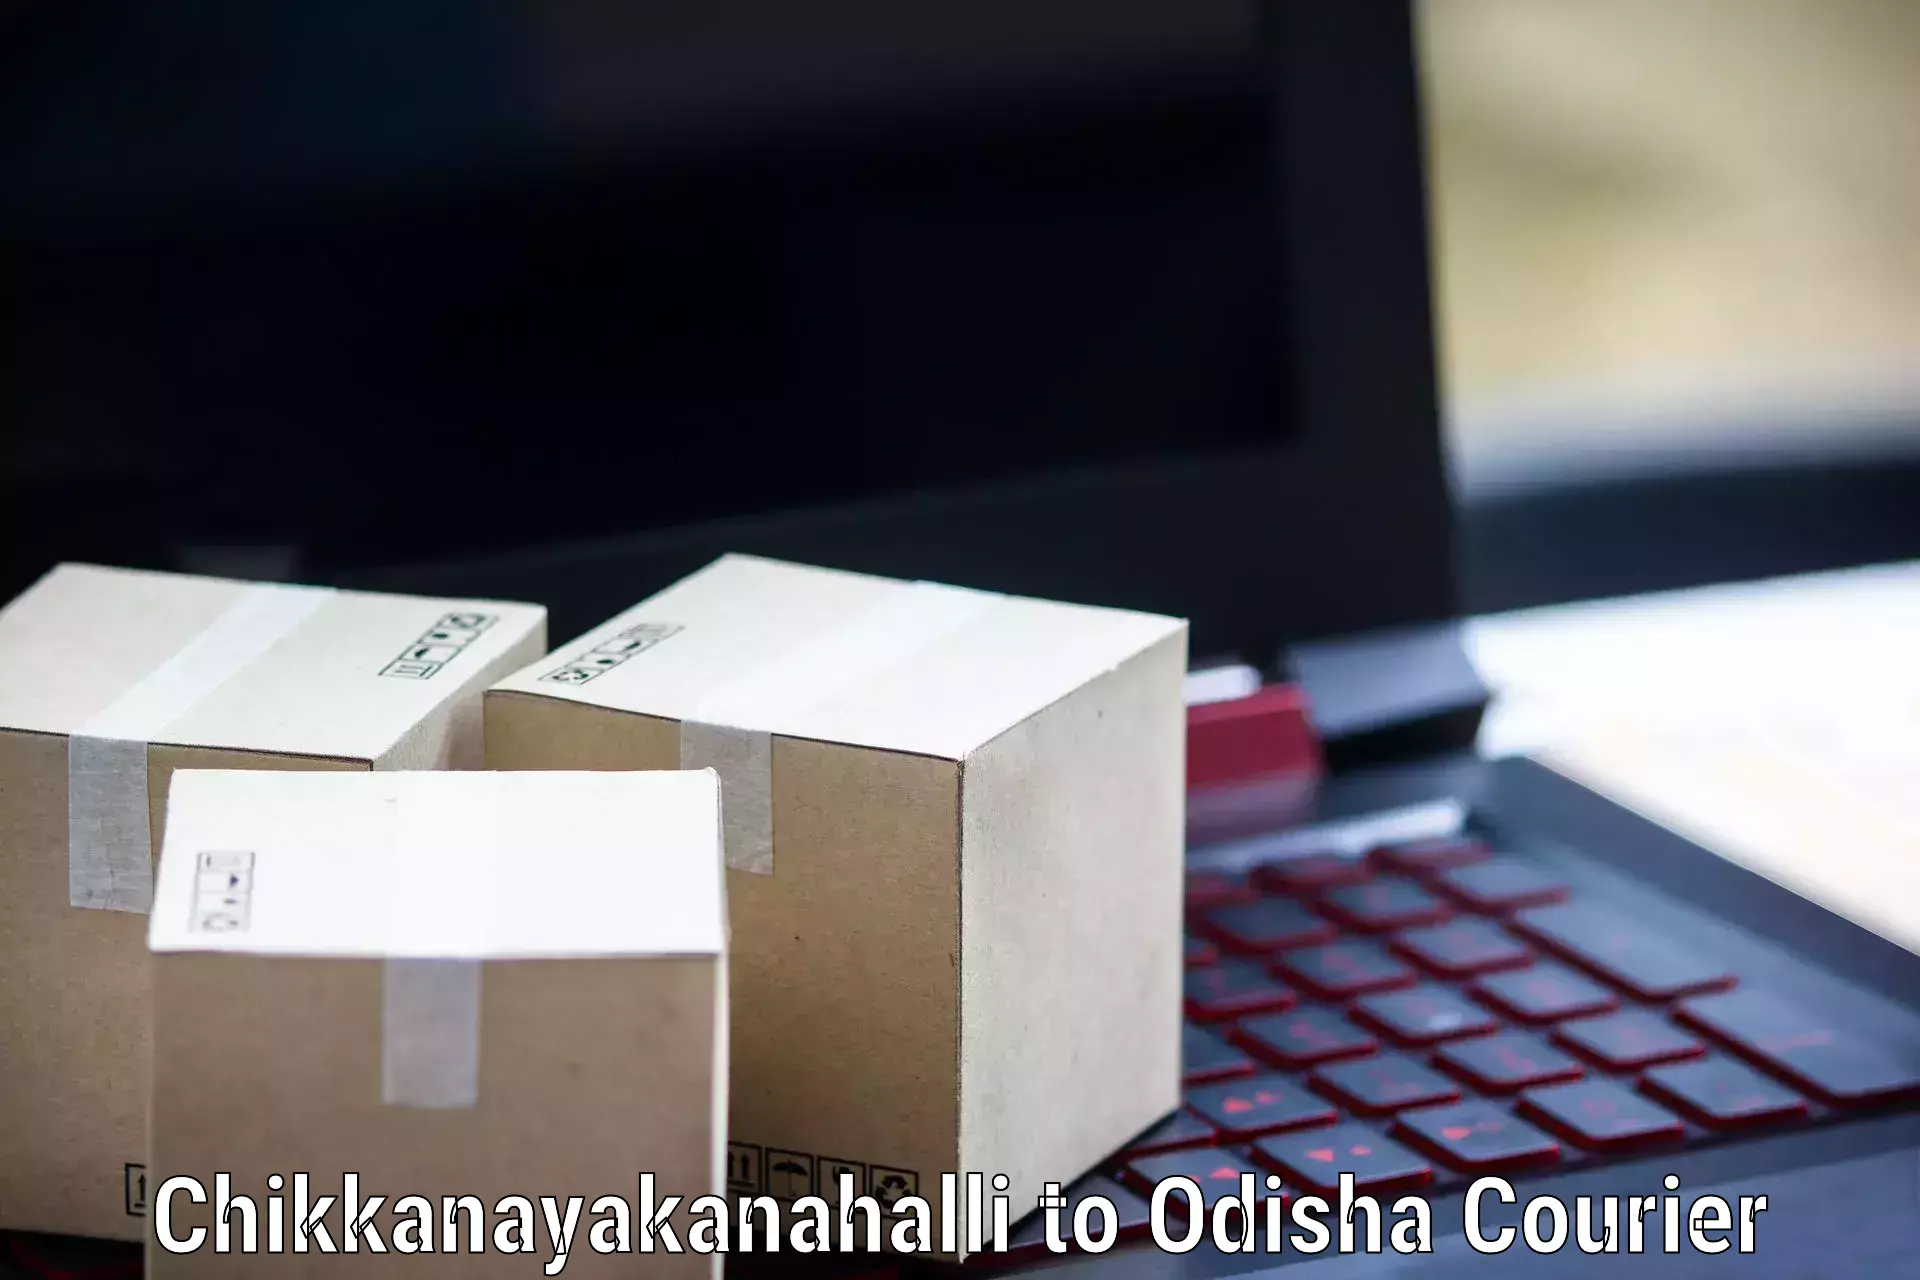 Versatile courier options Chikkanayakanahalli to Pottangi